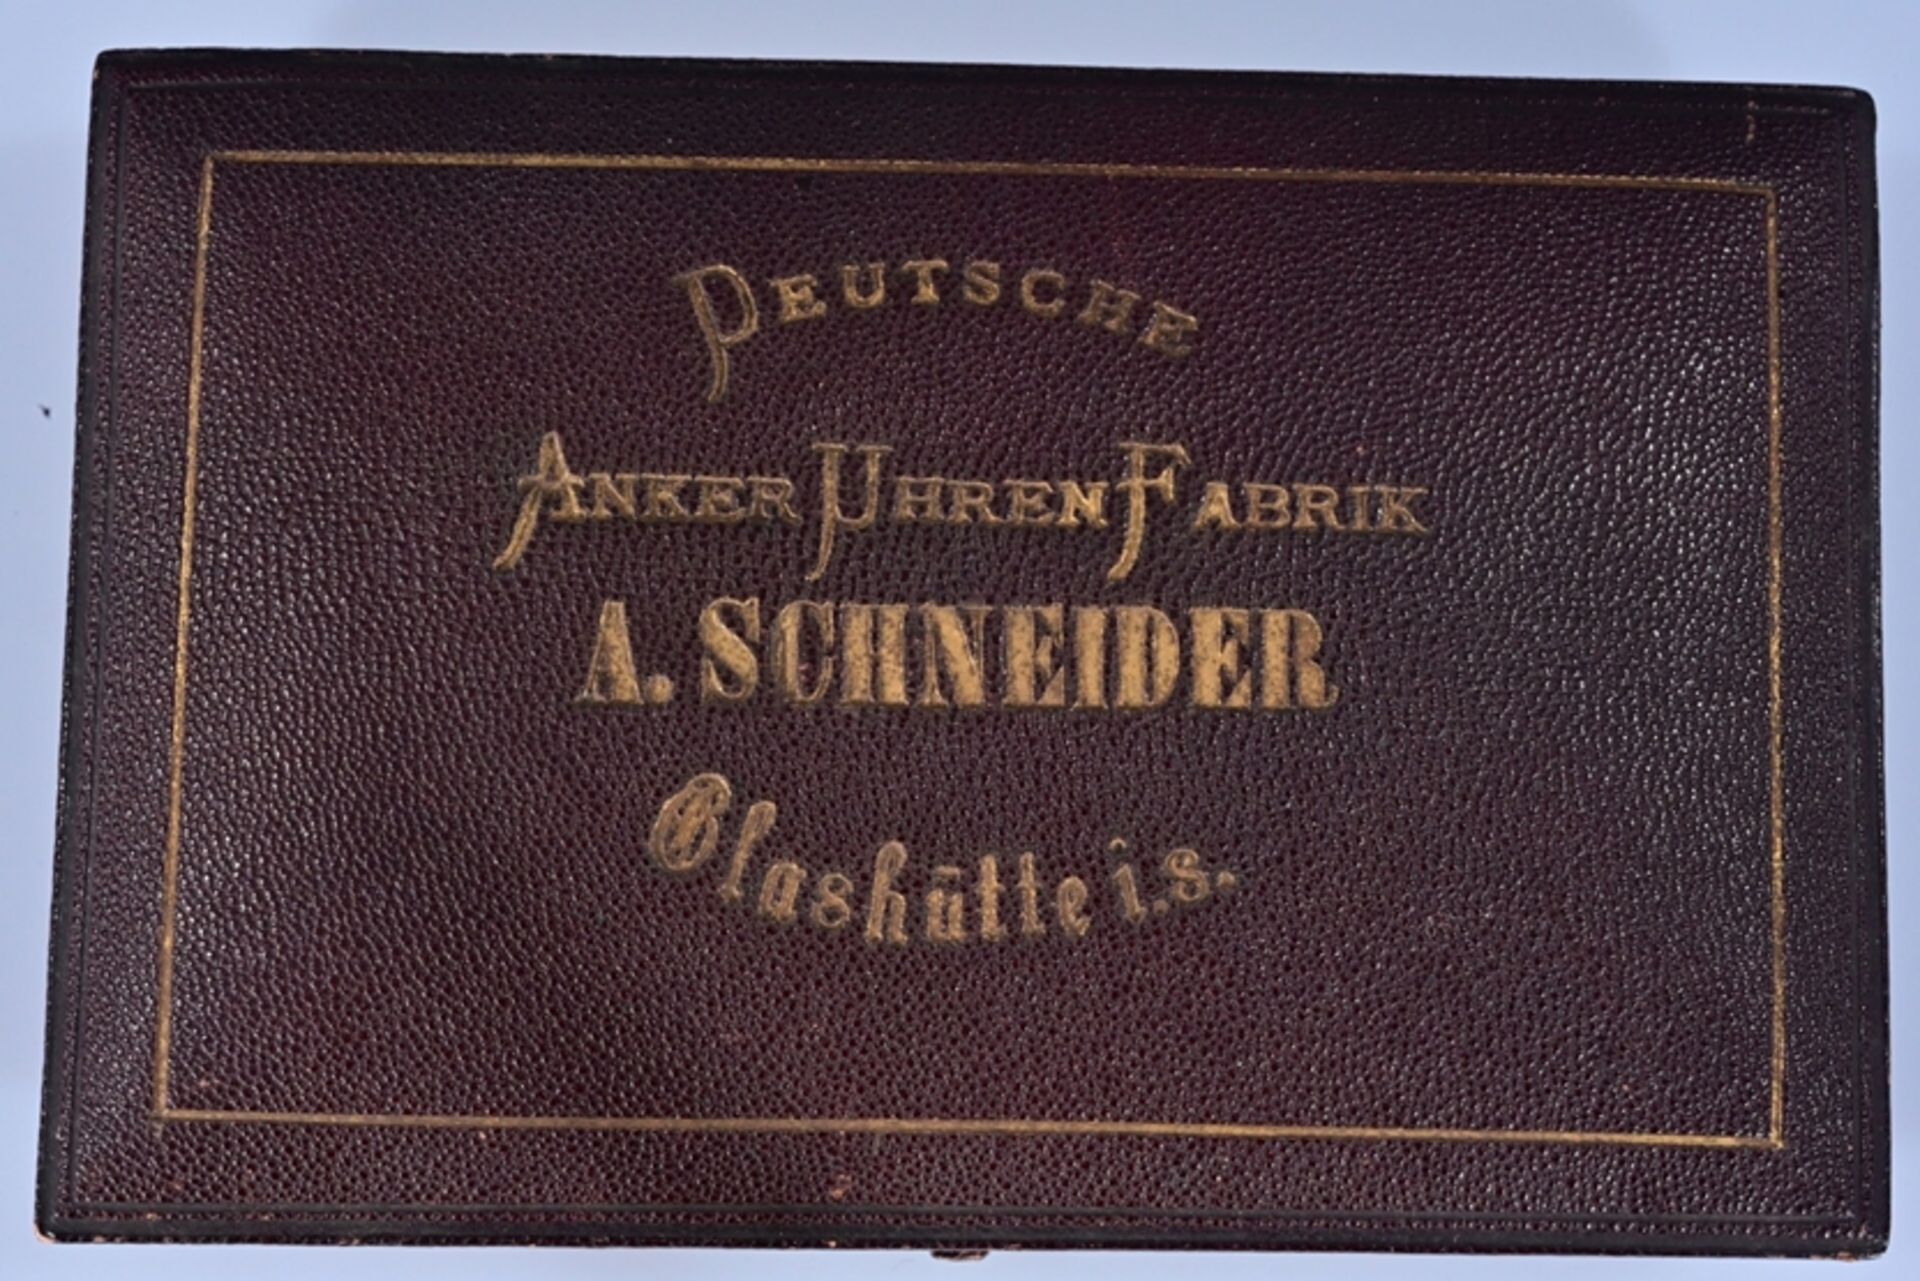 Seltene, offene Herrentaschenuhr von "A.SCHNEIDER GLASHÜTTE" der 1870er Jahre, in originaler Schatu - Image 9 of 17